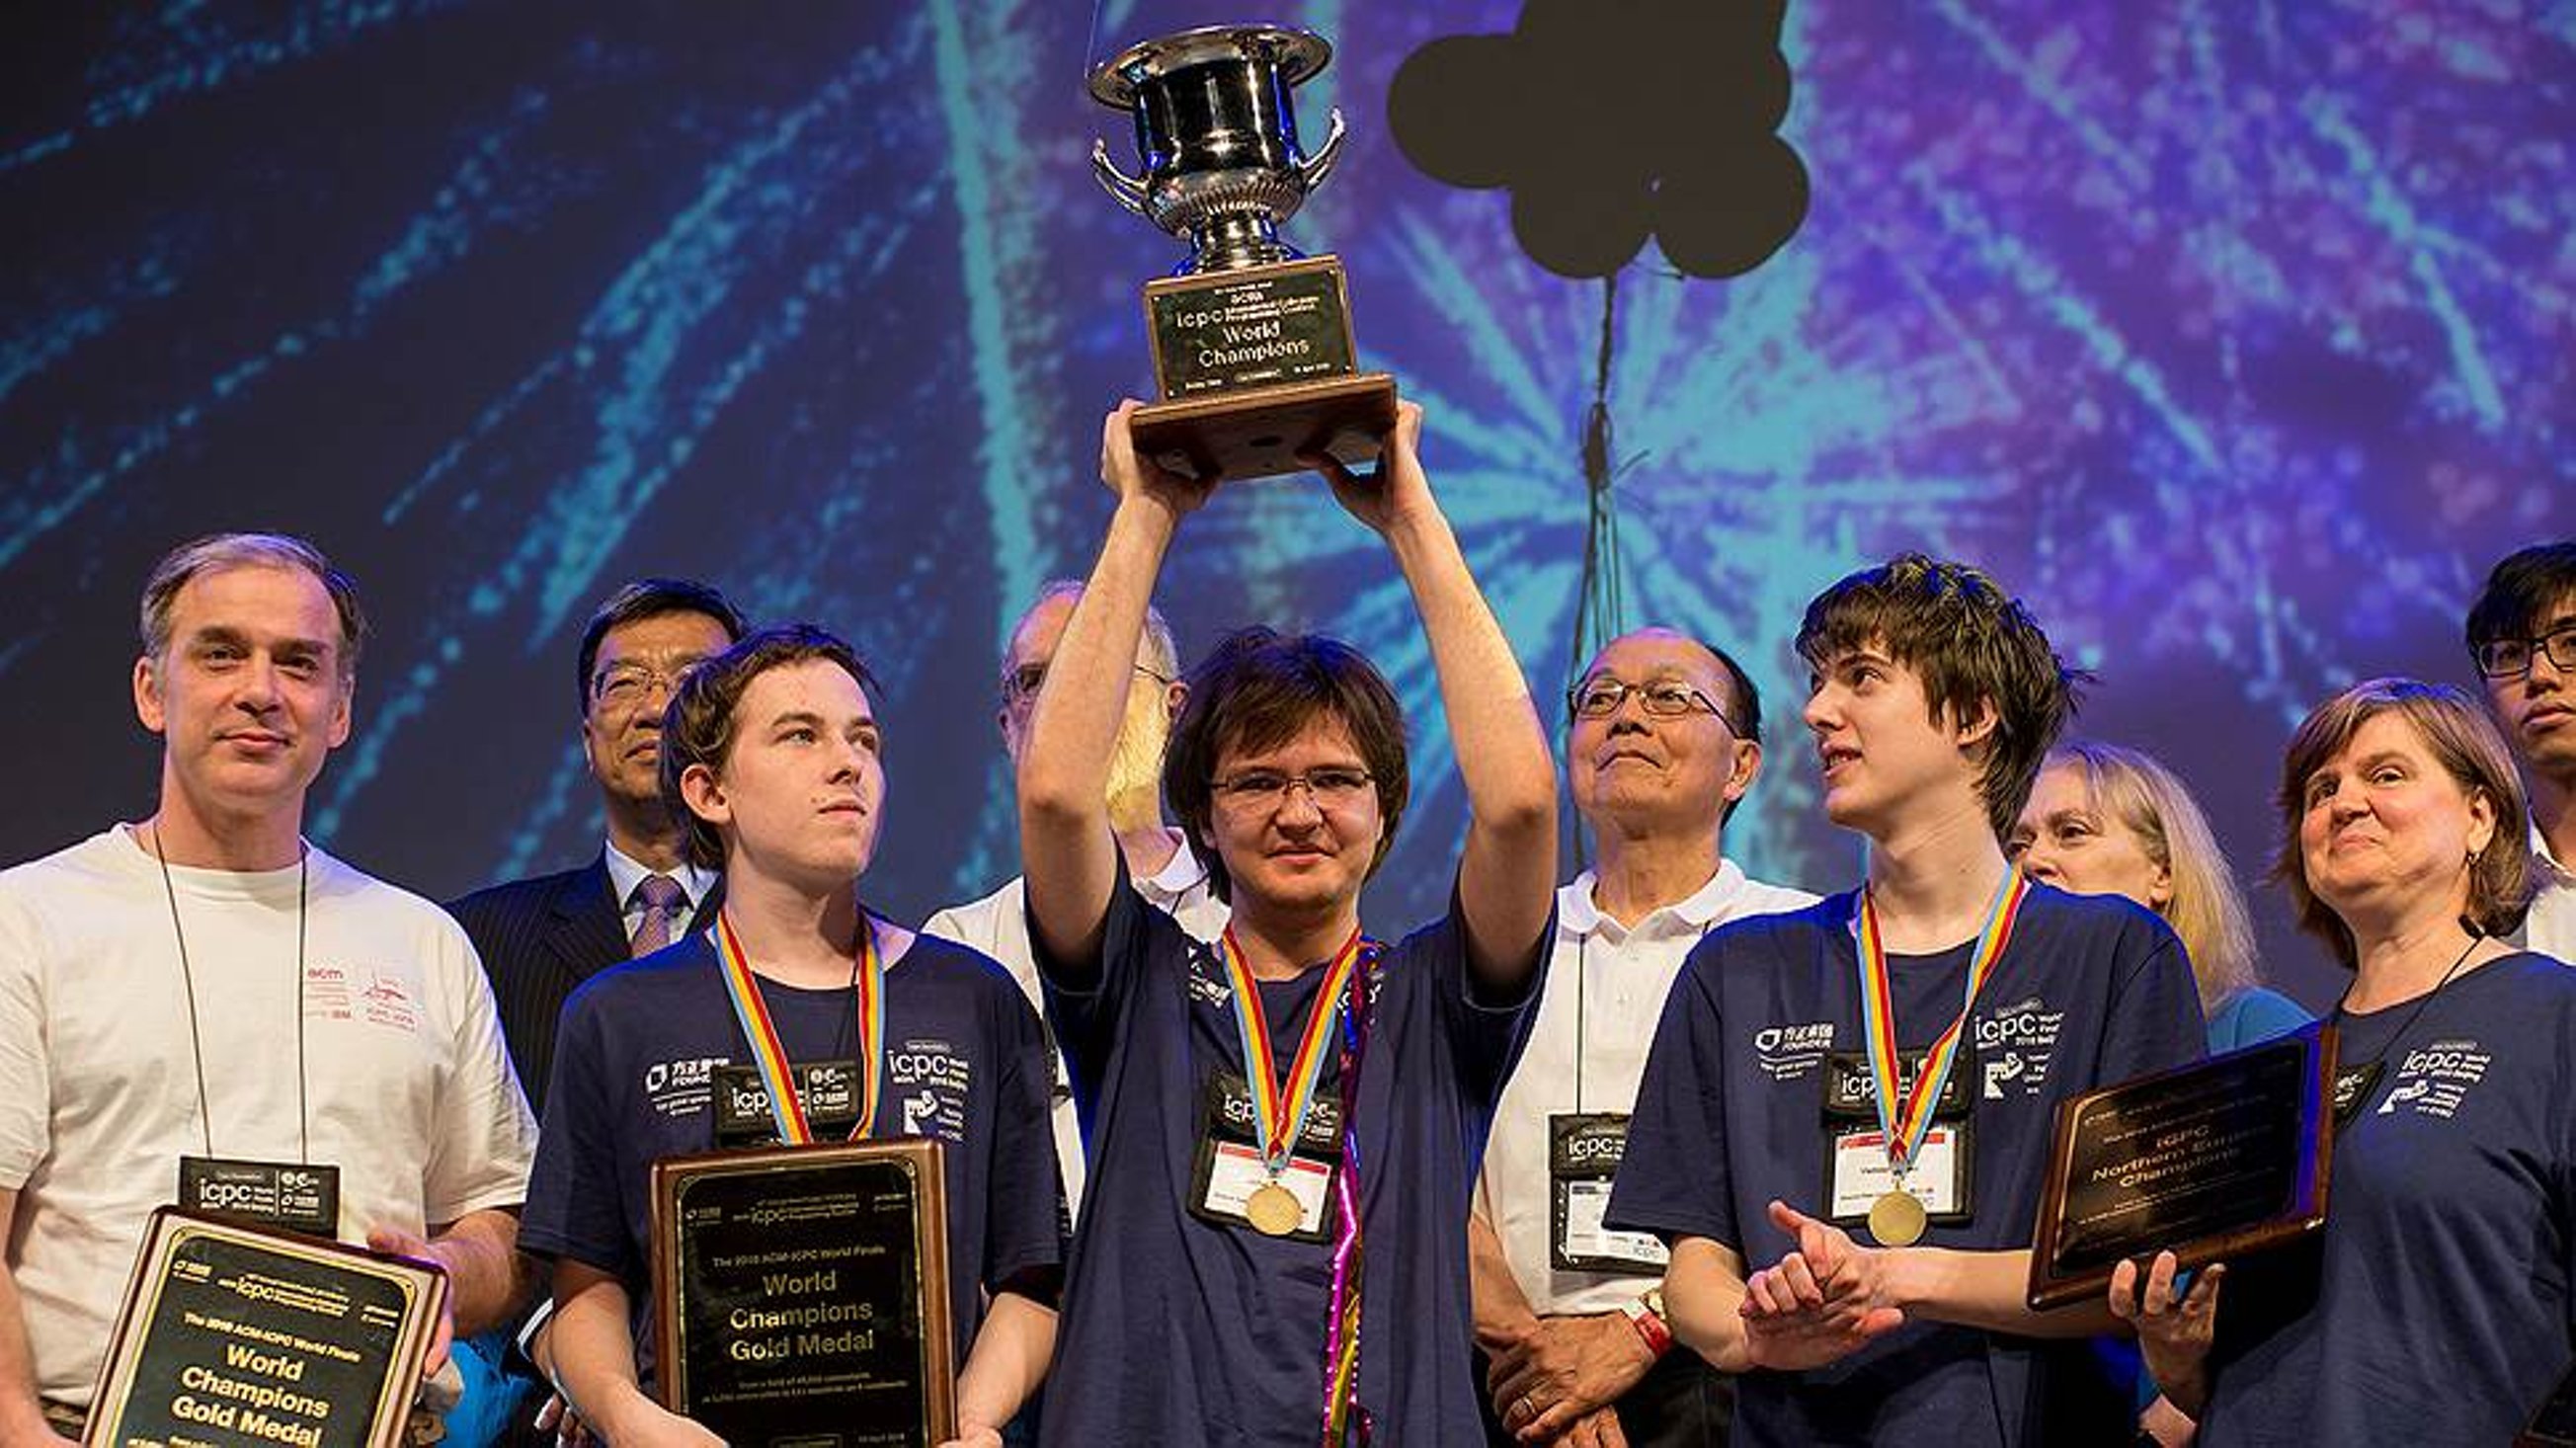 Команда из МГУ стала лучшей на чемпионате мира по спортивному программированию ICPC